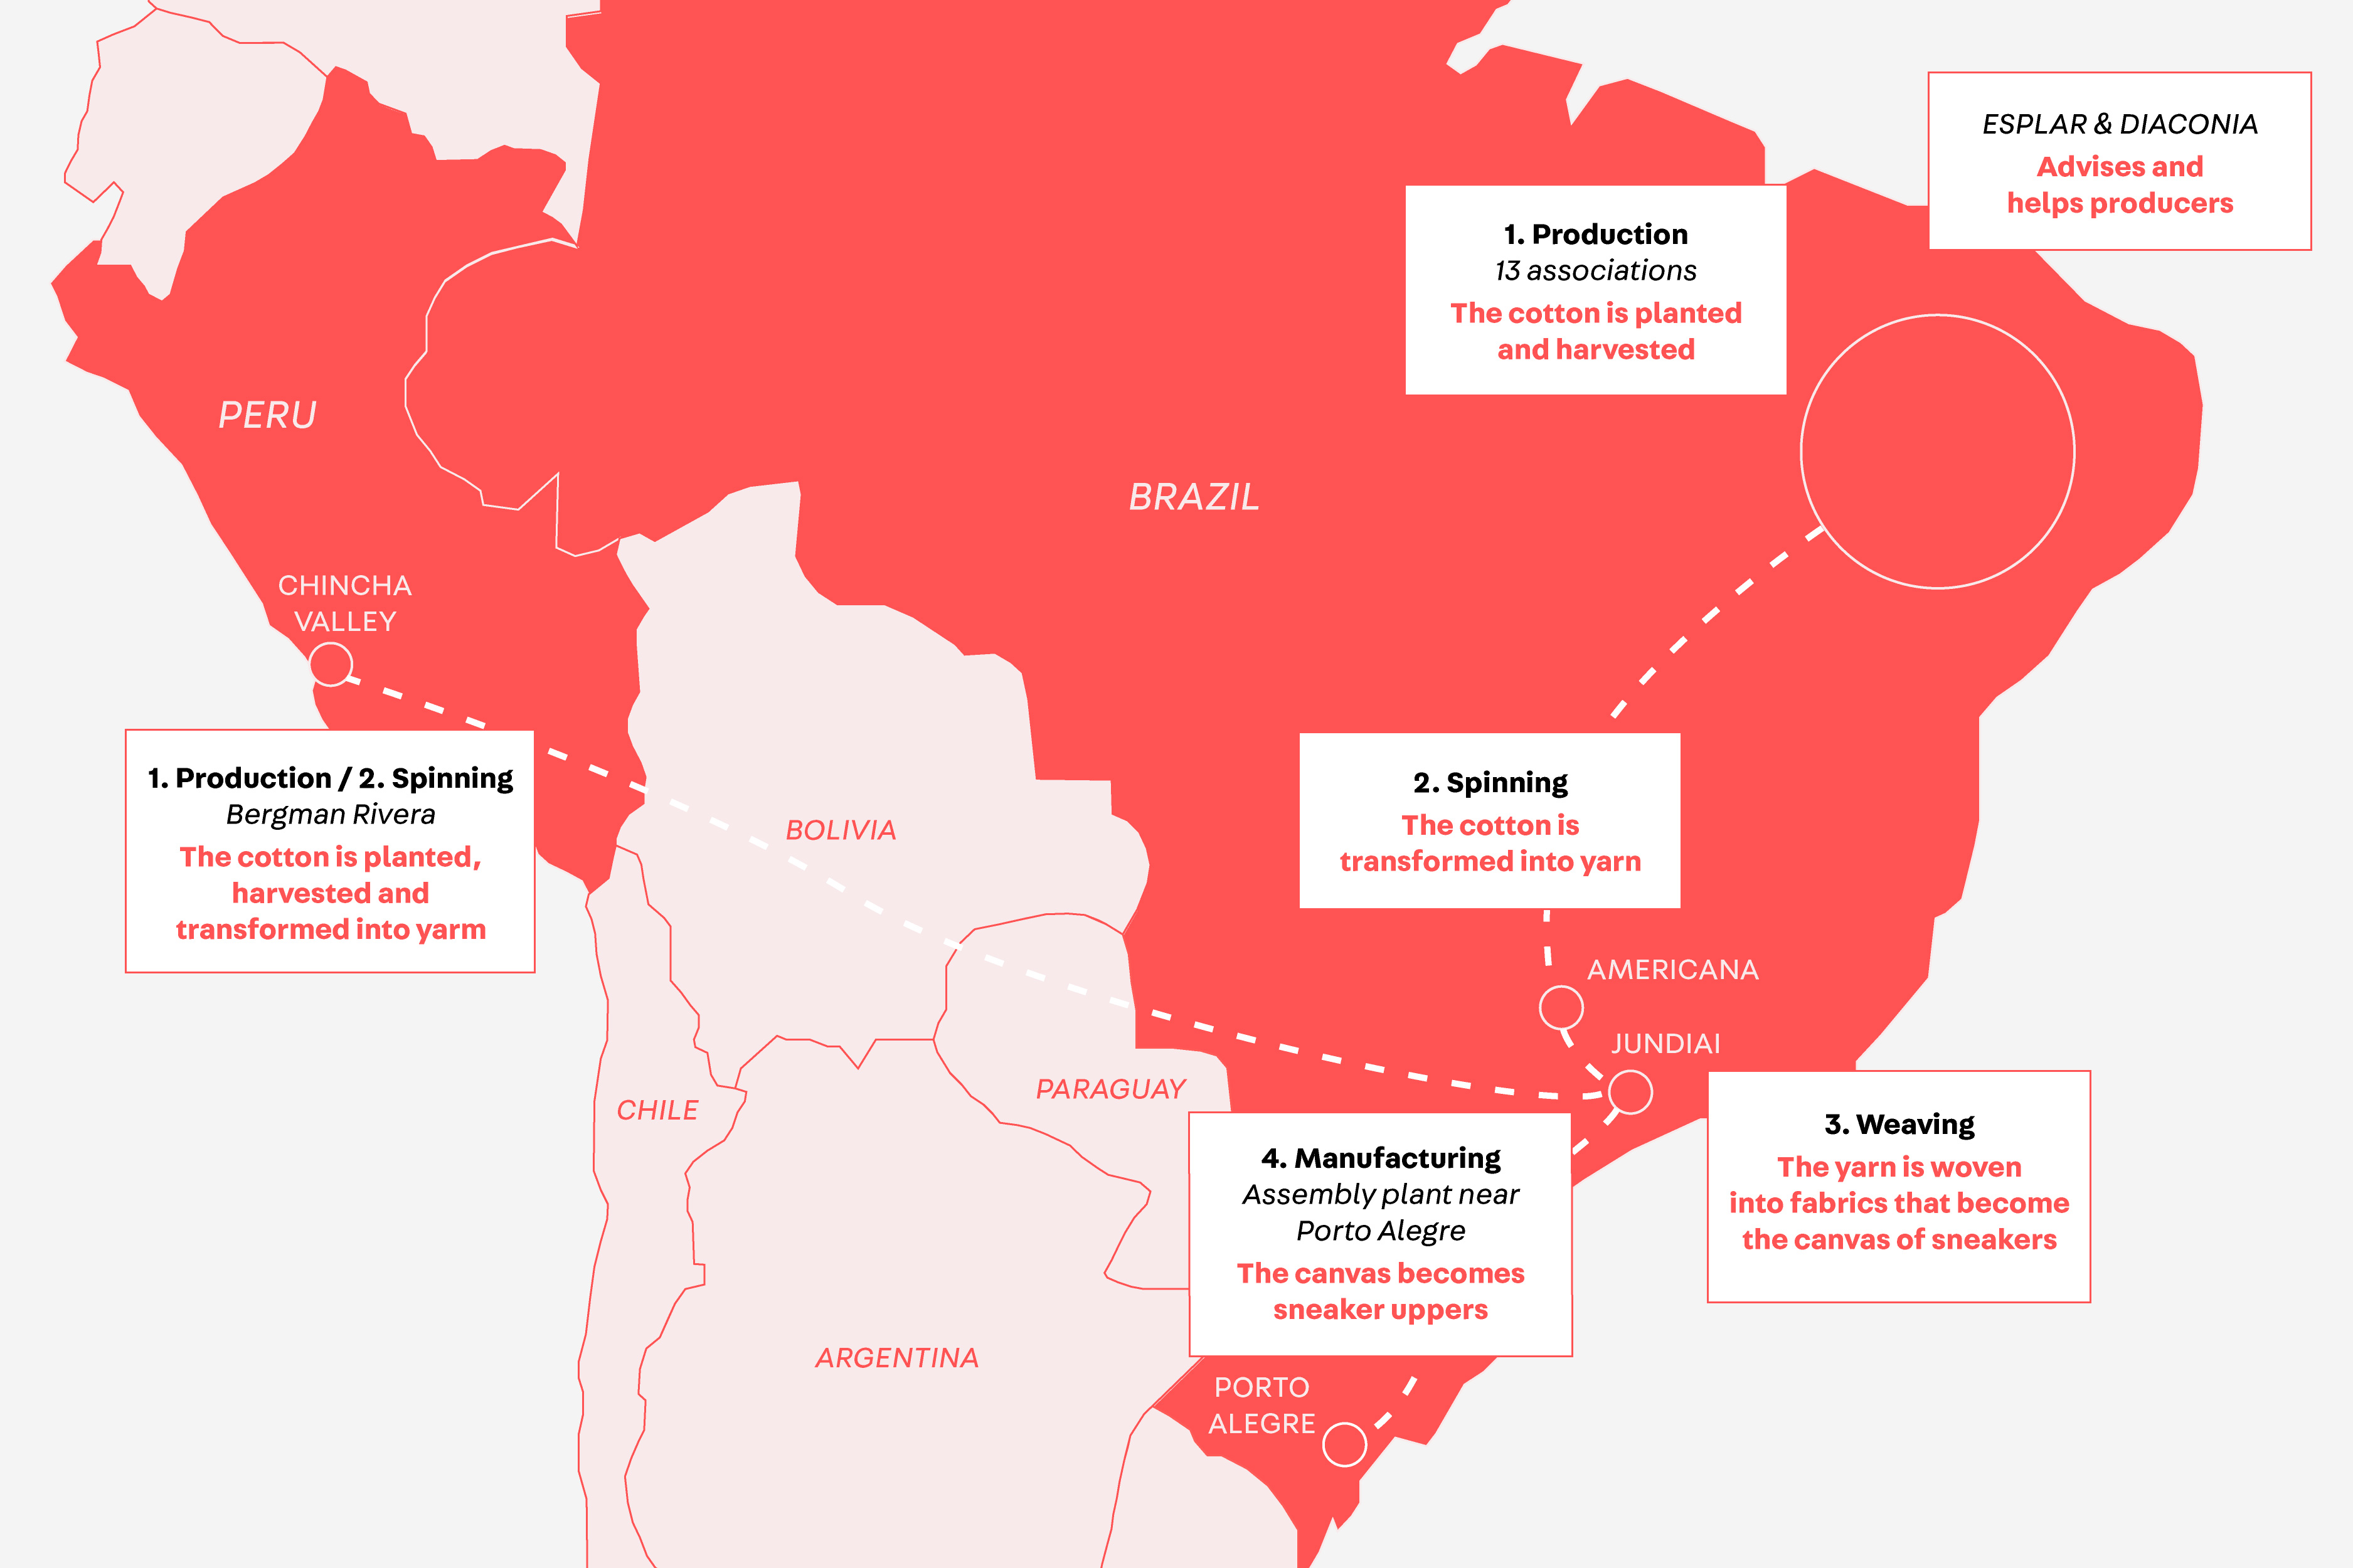 Mapa da América do Sul reproduzindo os caminhdos da produção de algodão orgânico VEJA